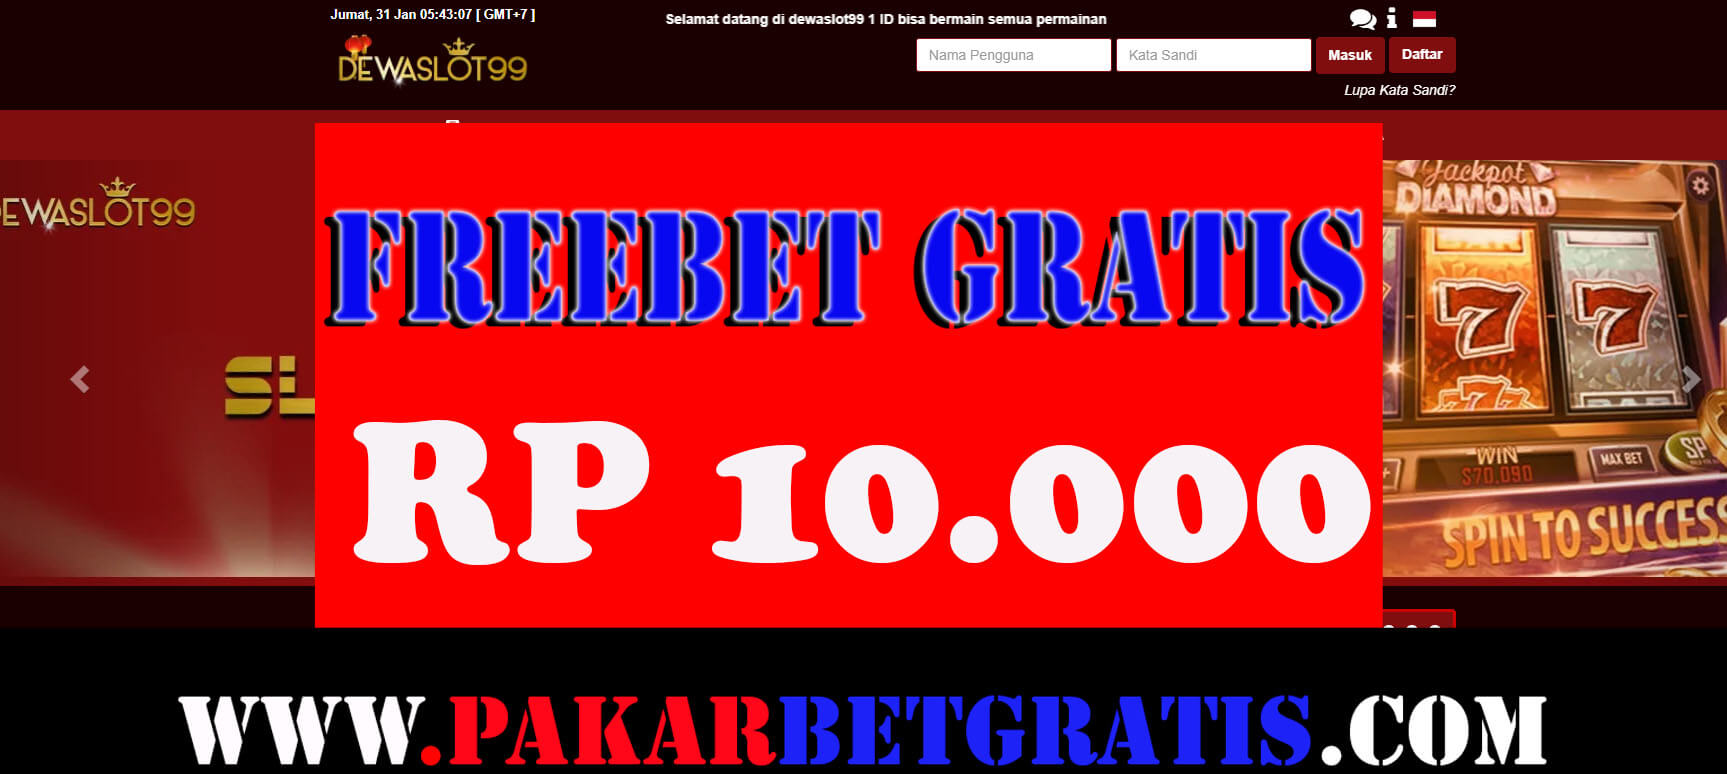 Freebetr gratis dewaslot99 Rp 10.000 Tanpa Deposit